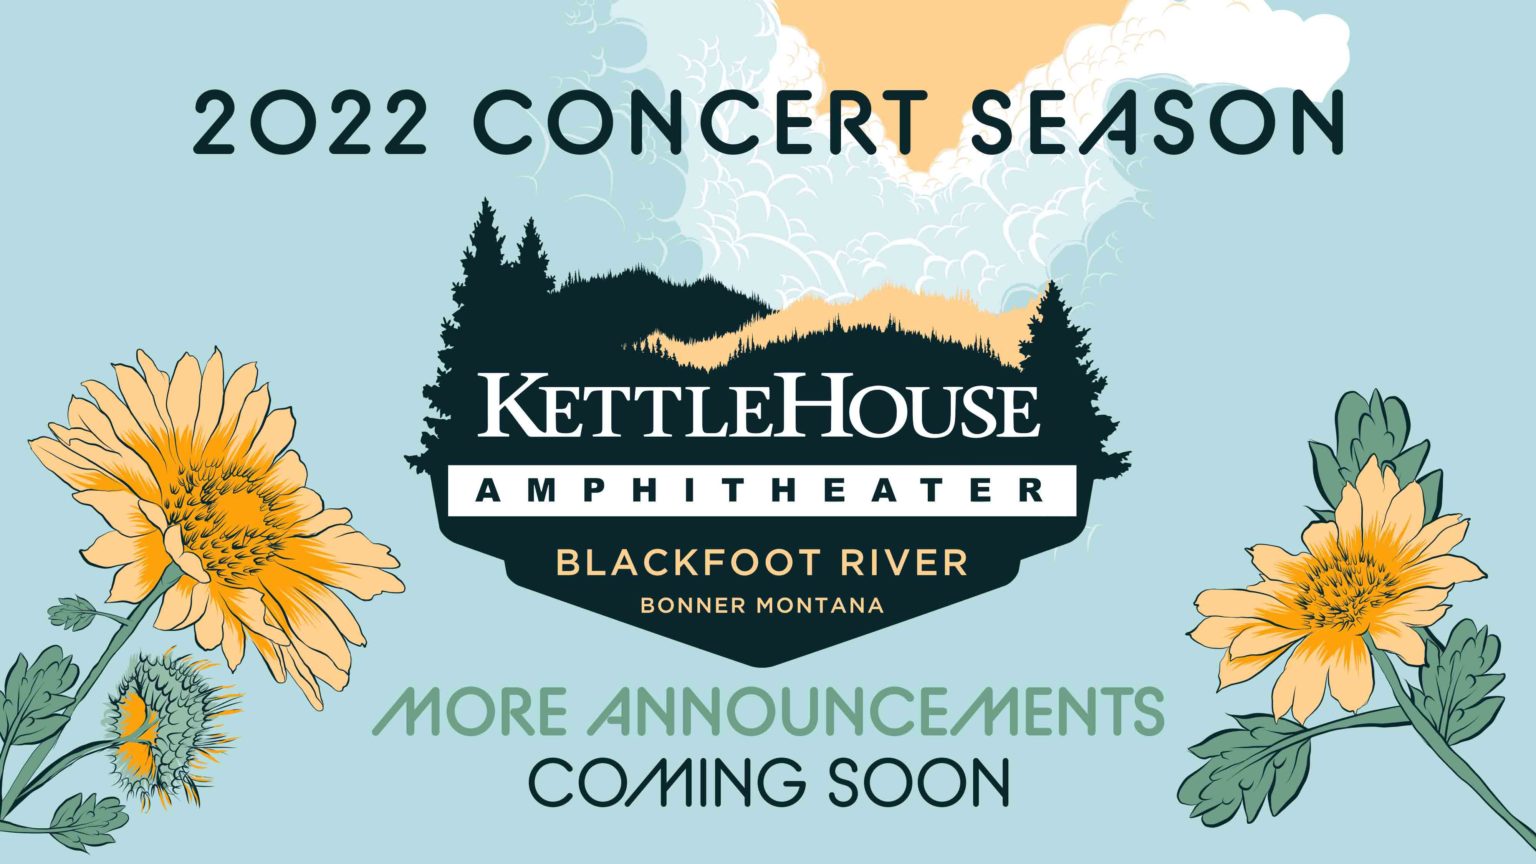 Going Green Guide 2022 Concert Season at KettleHouse Amphitheater